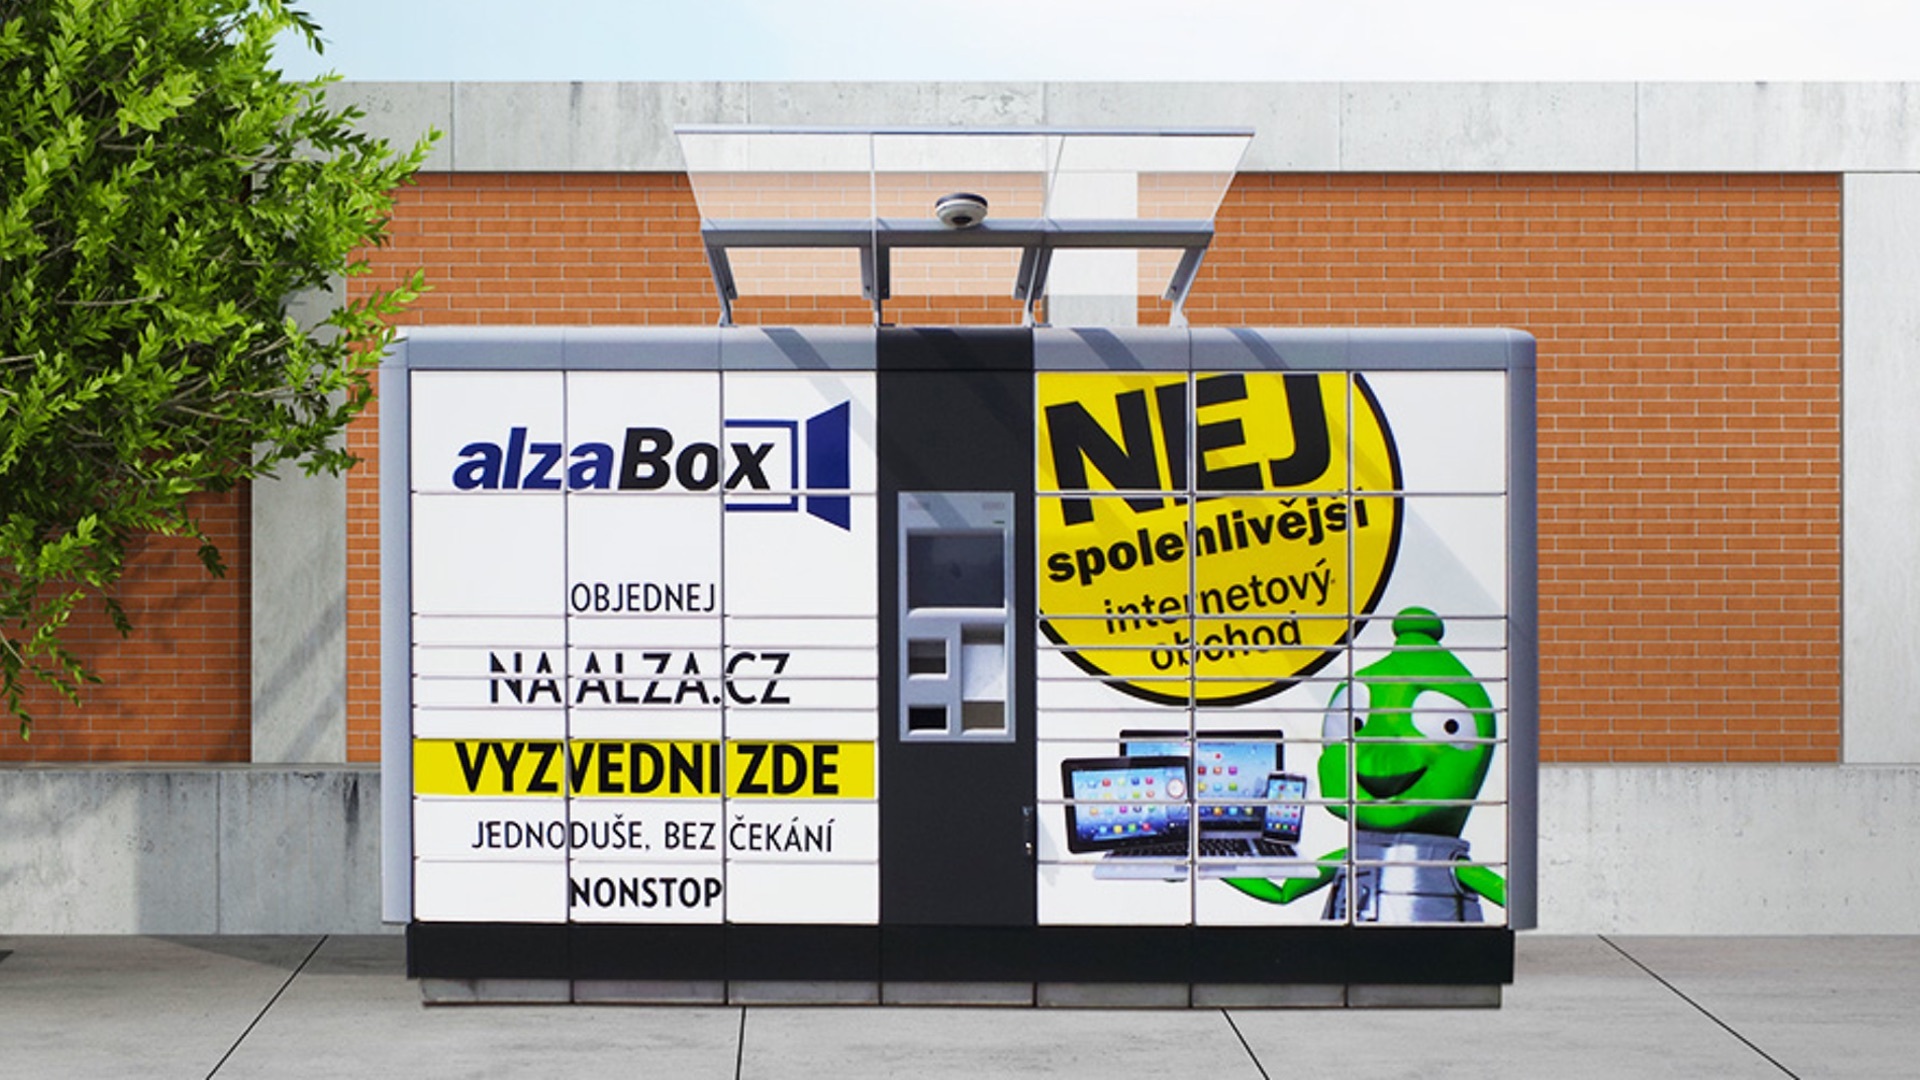 Alza boxy se otevírají tisícům e-shopů a dopravcům díky spolupráci Alza.cz a Balikobot.cz